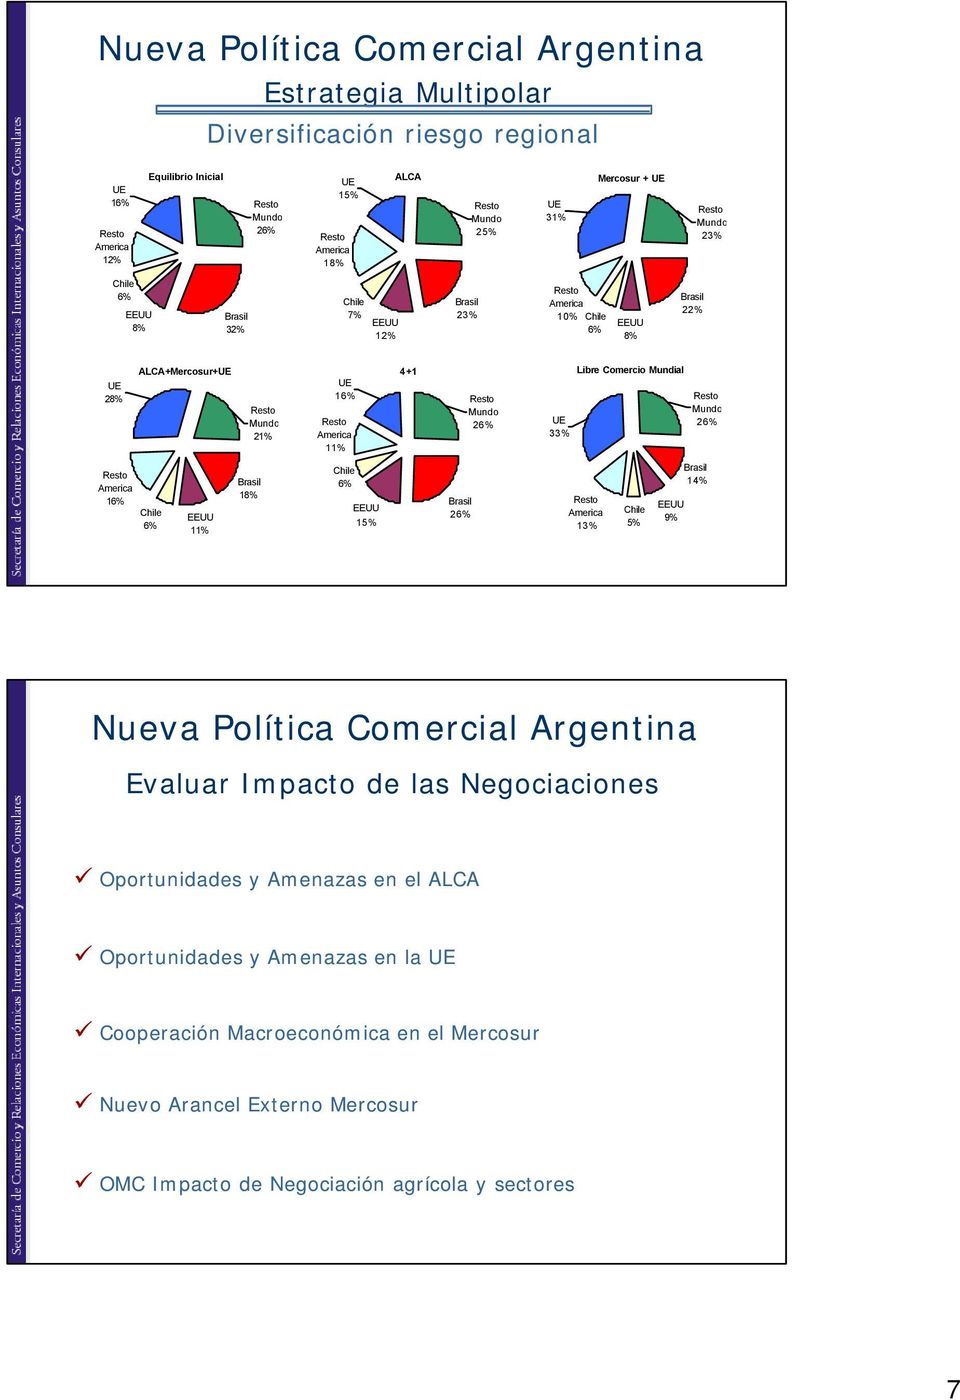 6% EEUU 15% Brasil 26% 33% Libre Comercio Mundial America 13% Chile 5% EEUU 9% Mundo 26% Brasil 14% Nueva Política Comercial Argentina Evaluar Impacto de las Negociaciones